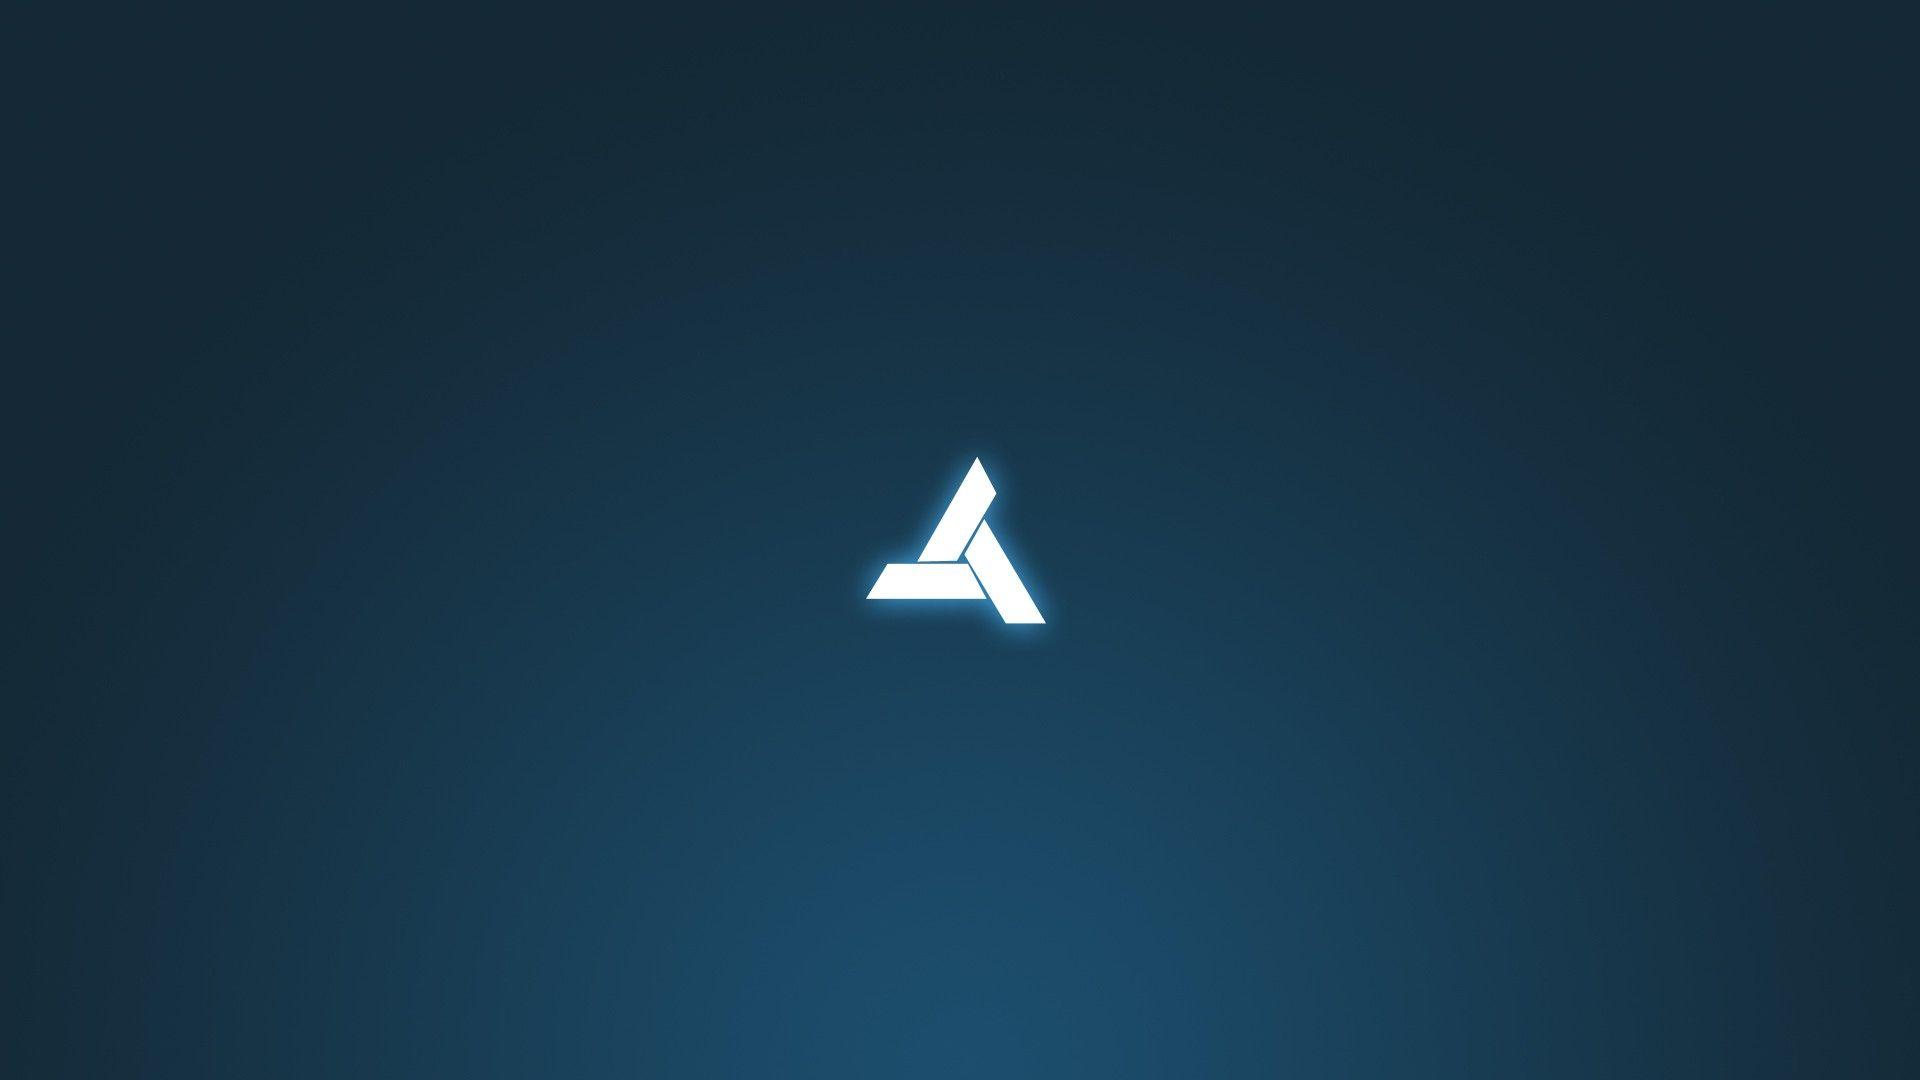 Assassins Creed, Abstergo Industries, Animus Wallpaper HD / Desktop